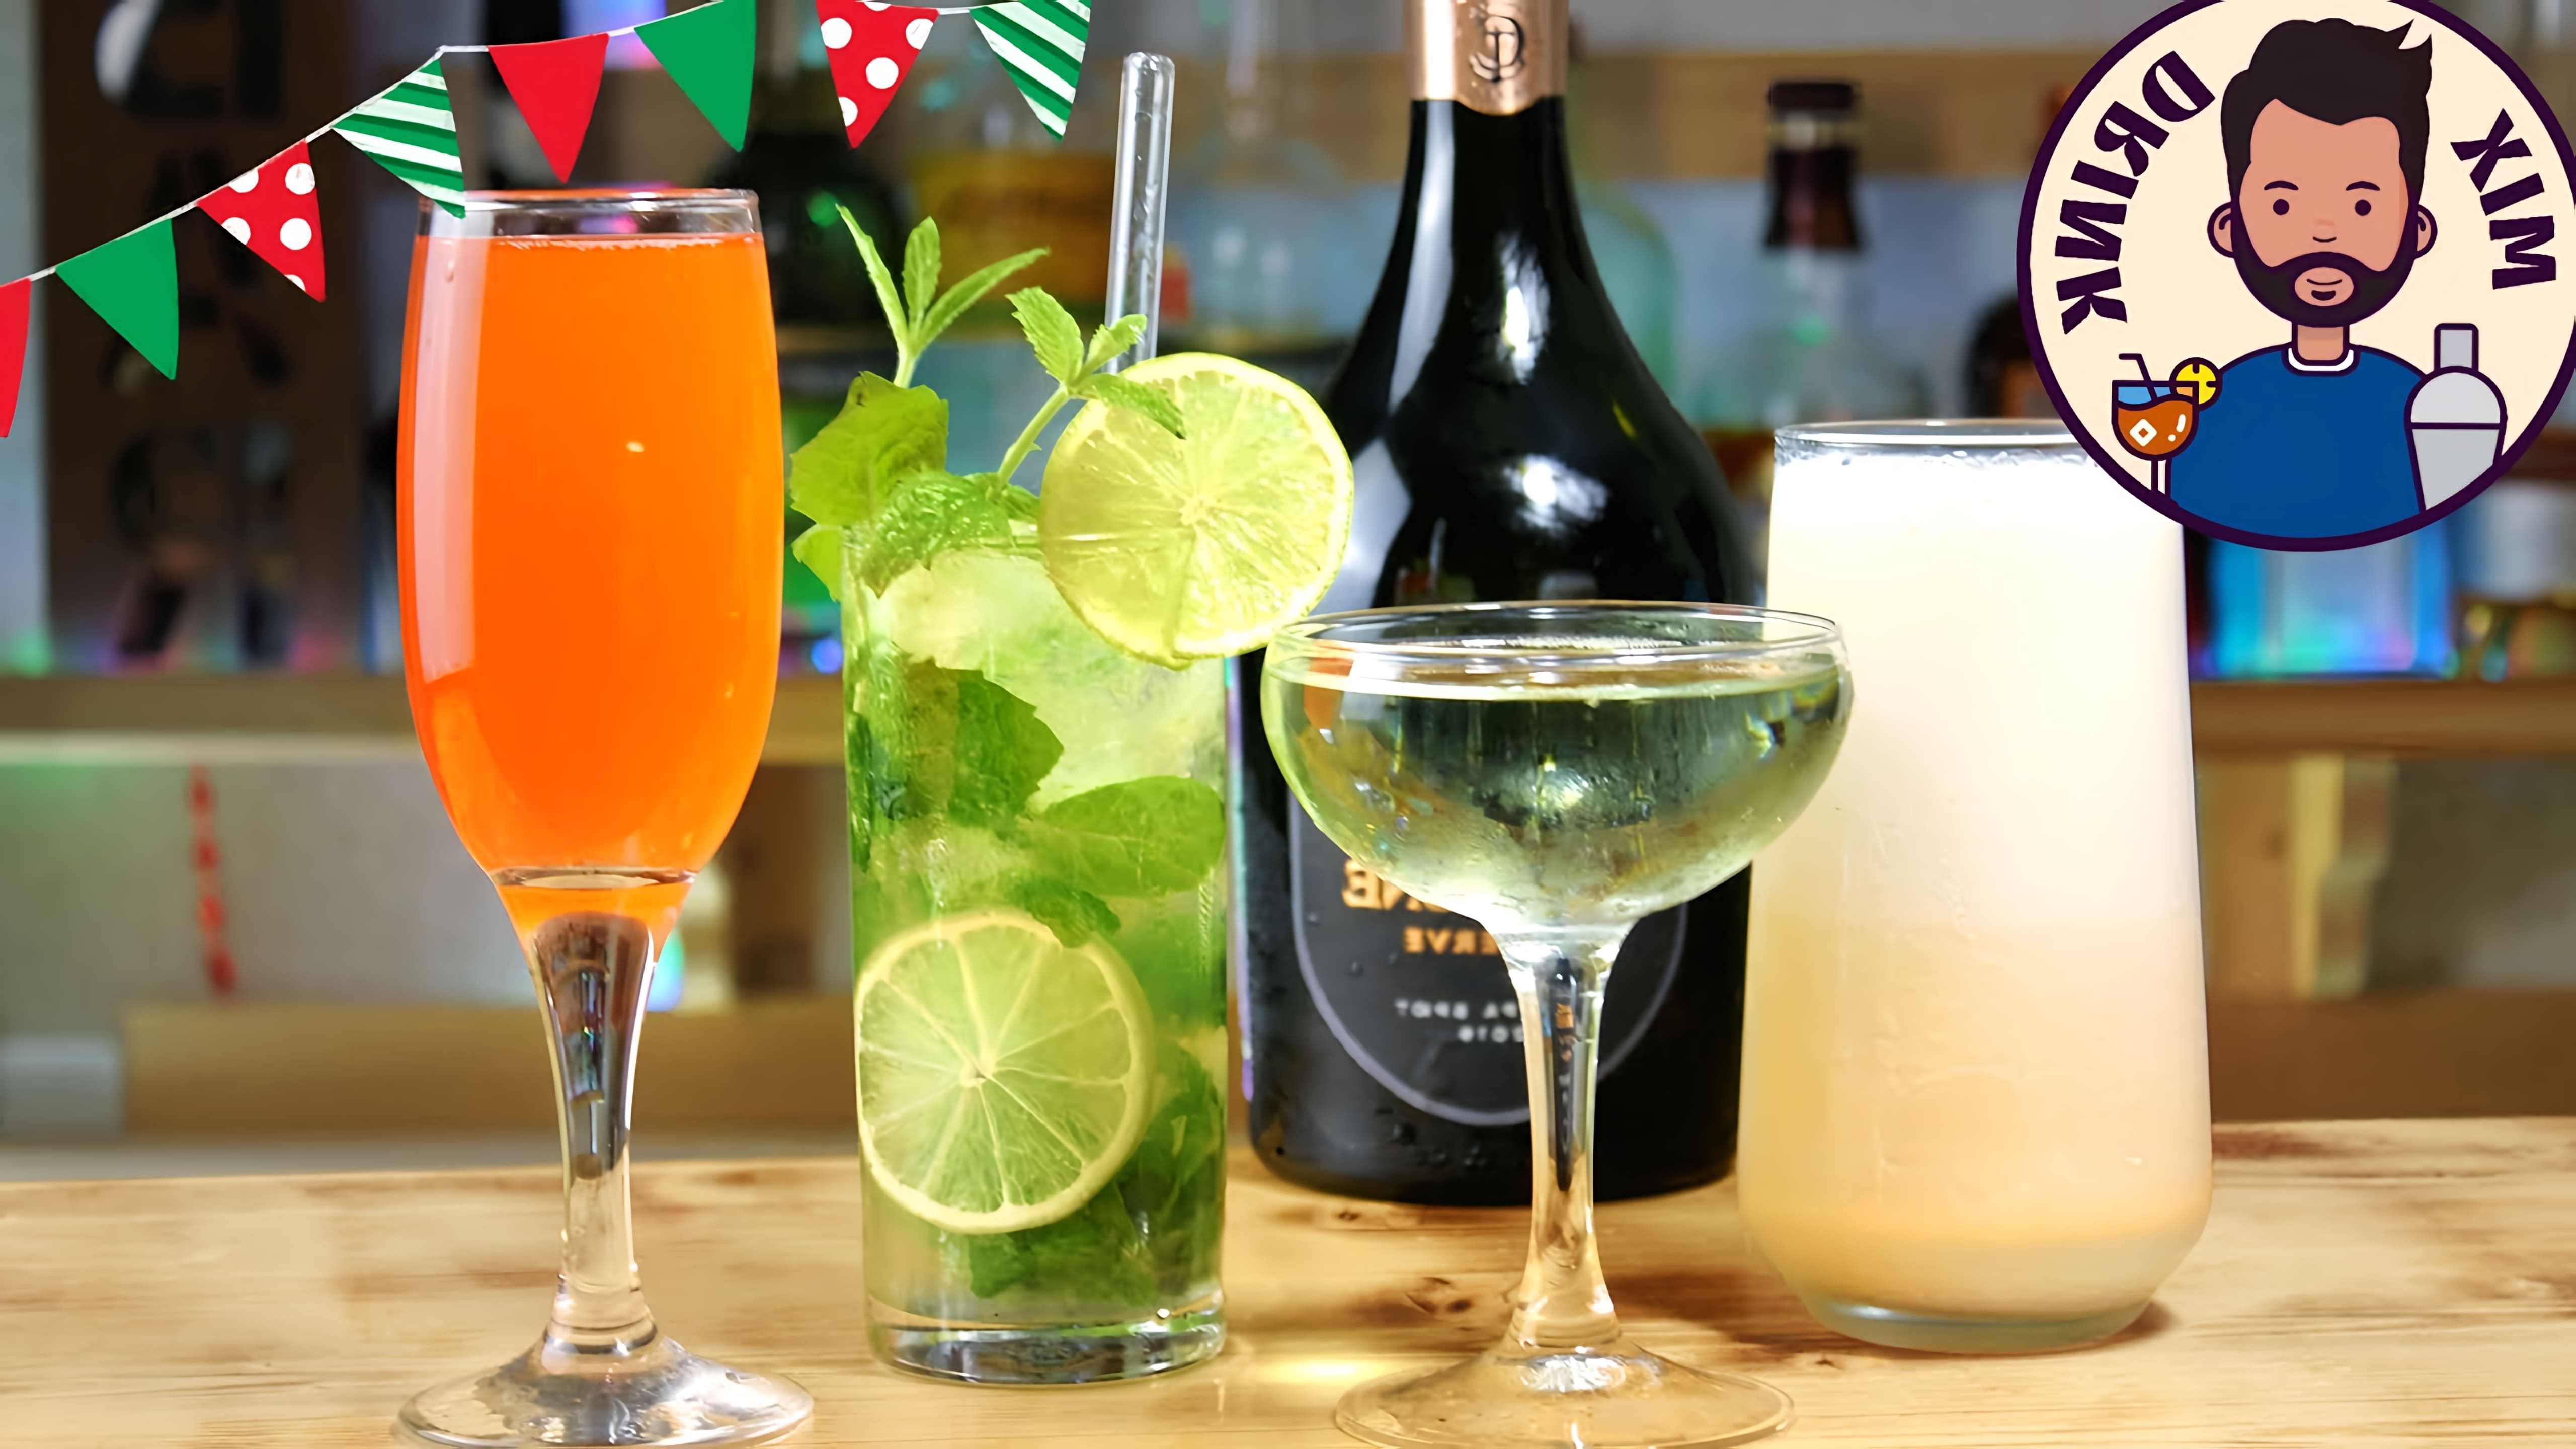 В этом видео демонстрируются рецепты четырех коктейлей с шампанским: "Бандитская страсть", "Стратосфера", "Королевский мохито" и "Сливочный Baileys"